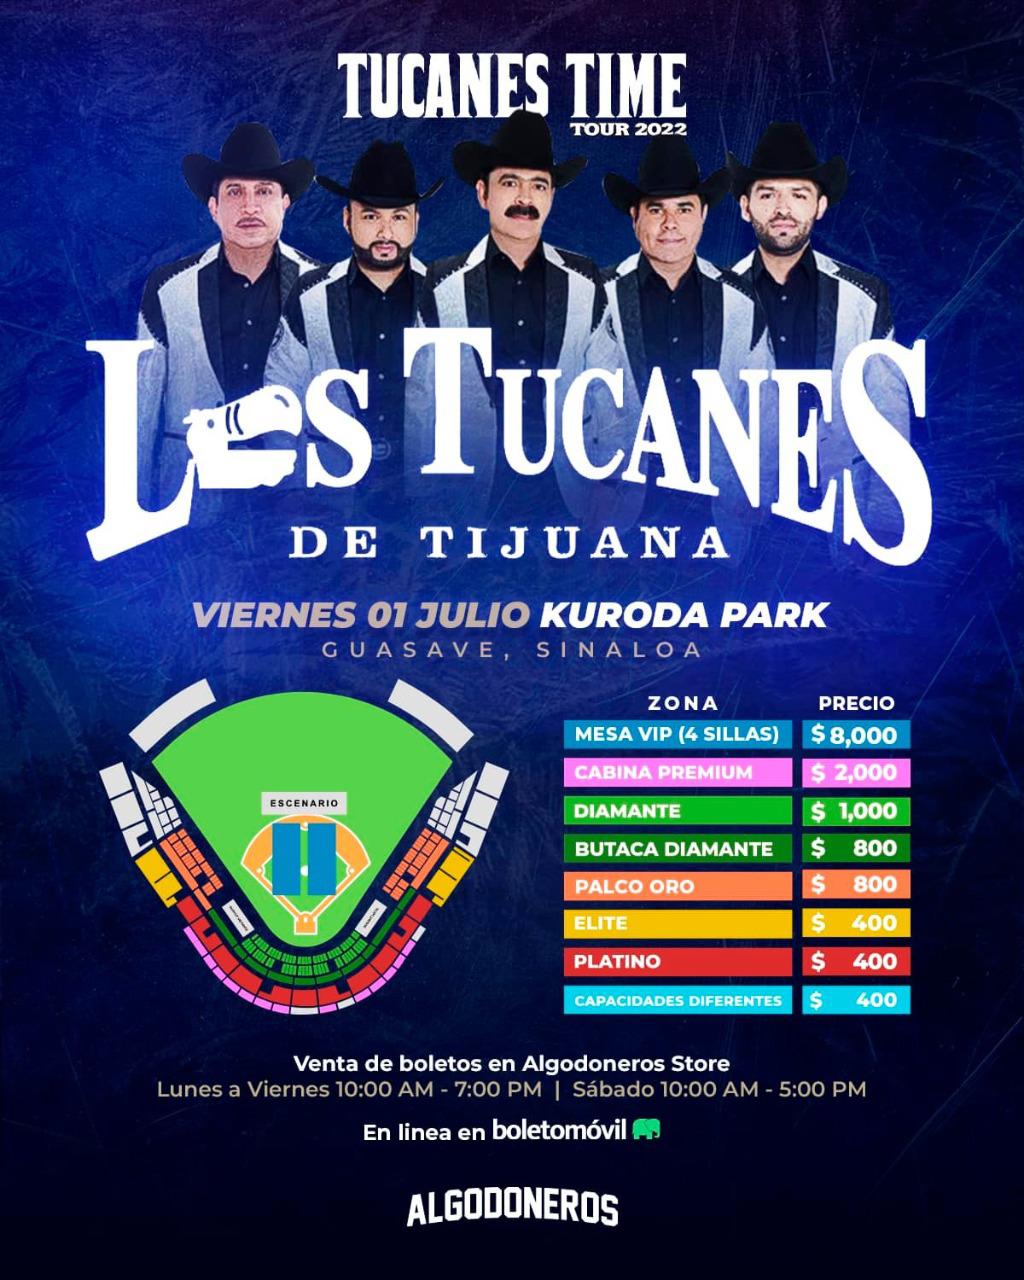 Los Tucanes de Tijuana llegarán con su Tucanes Time el 1 de julio a Guasave